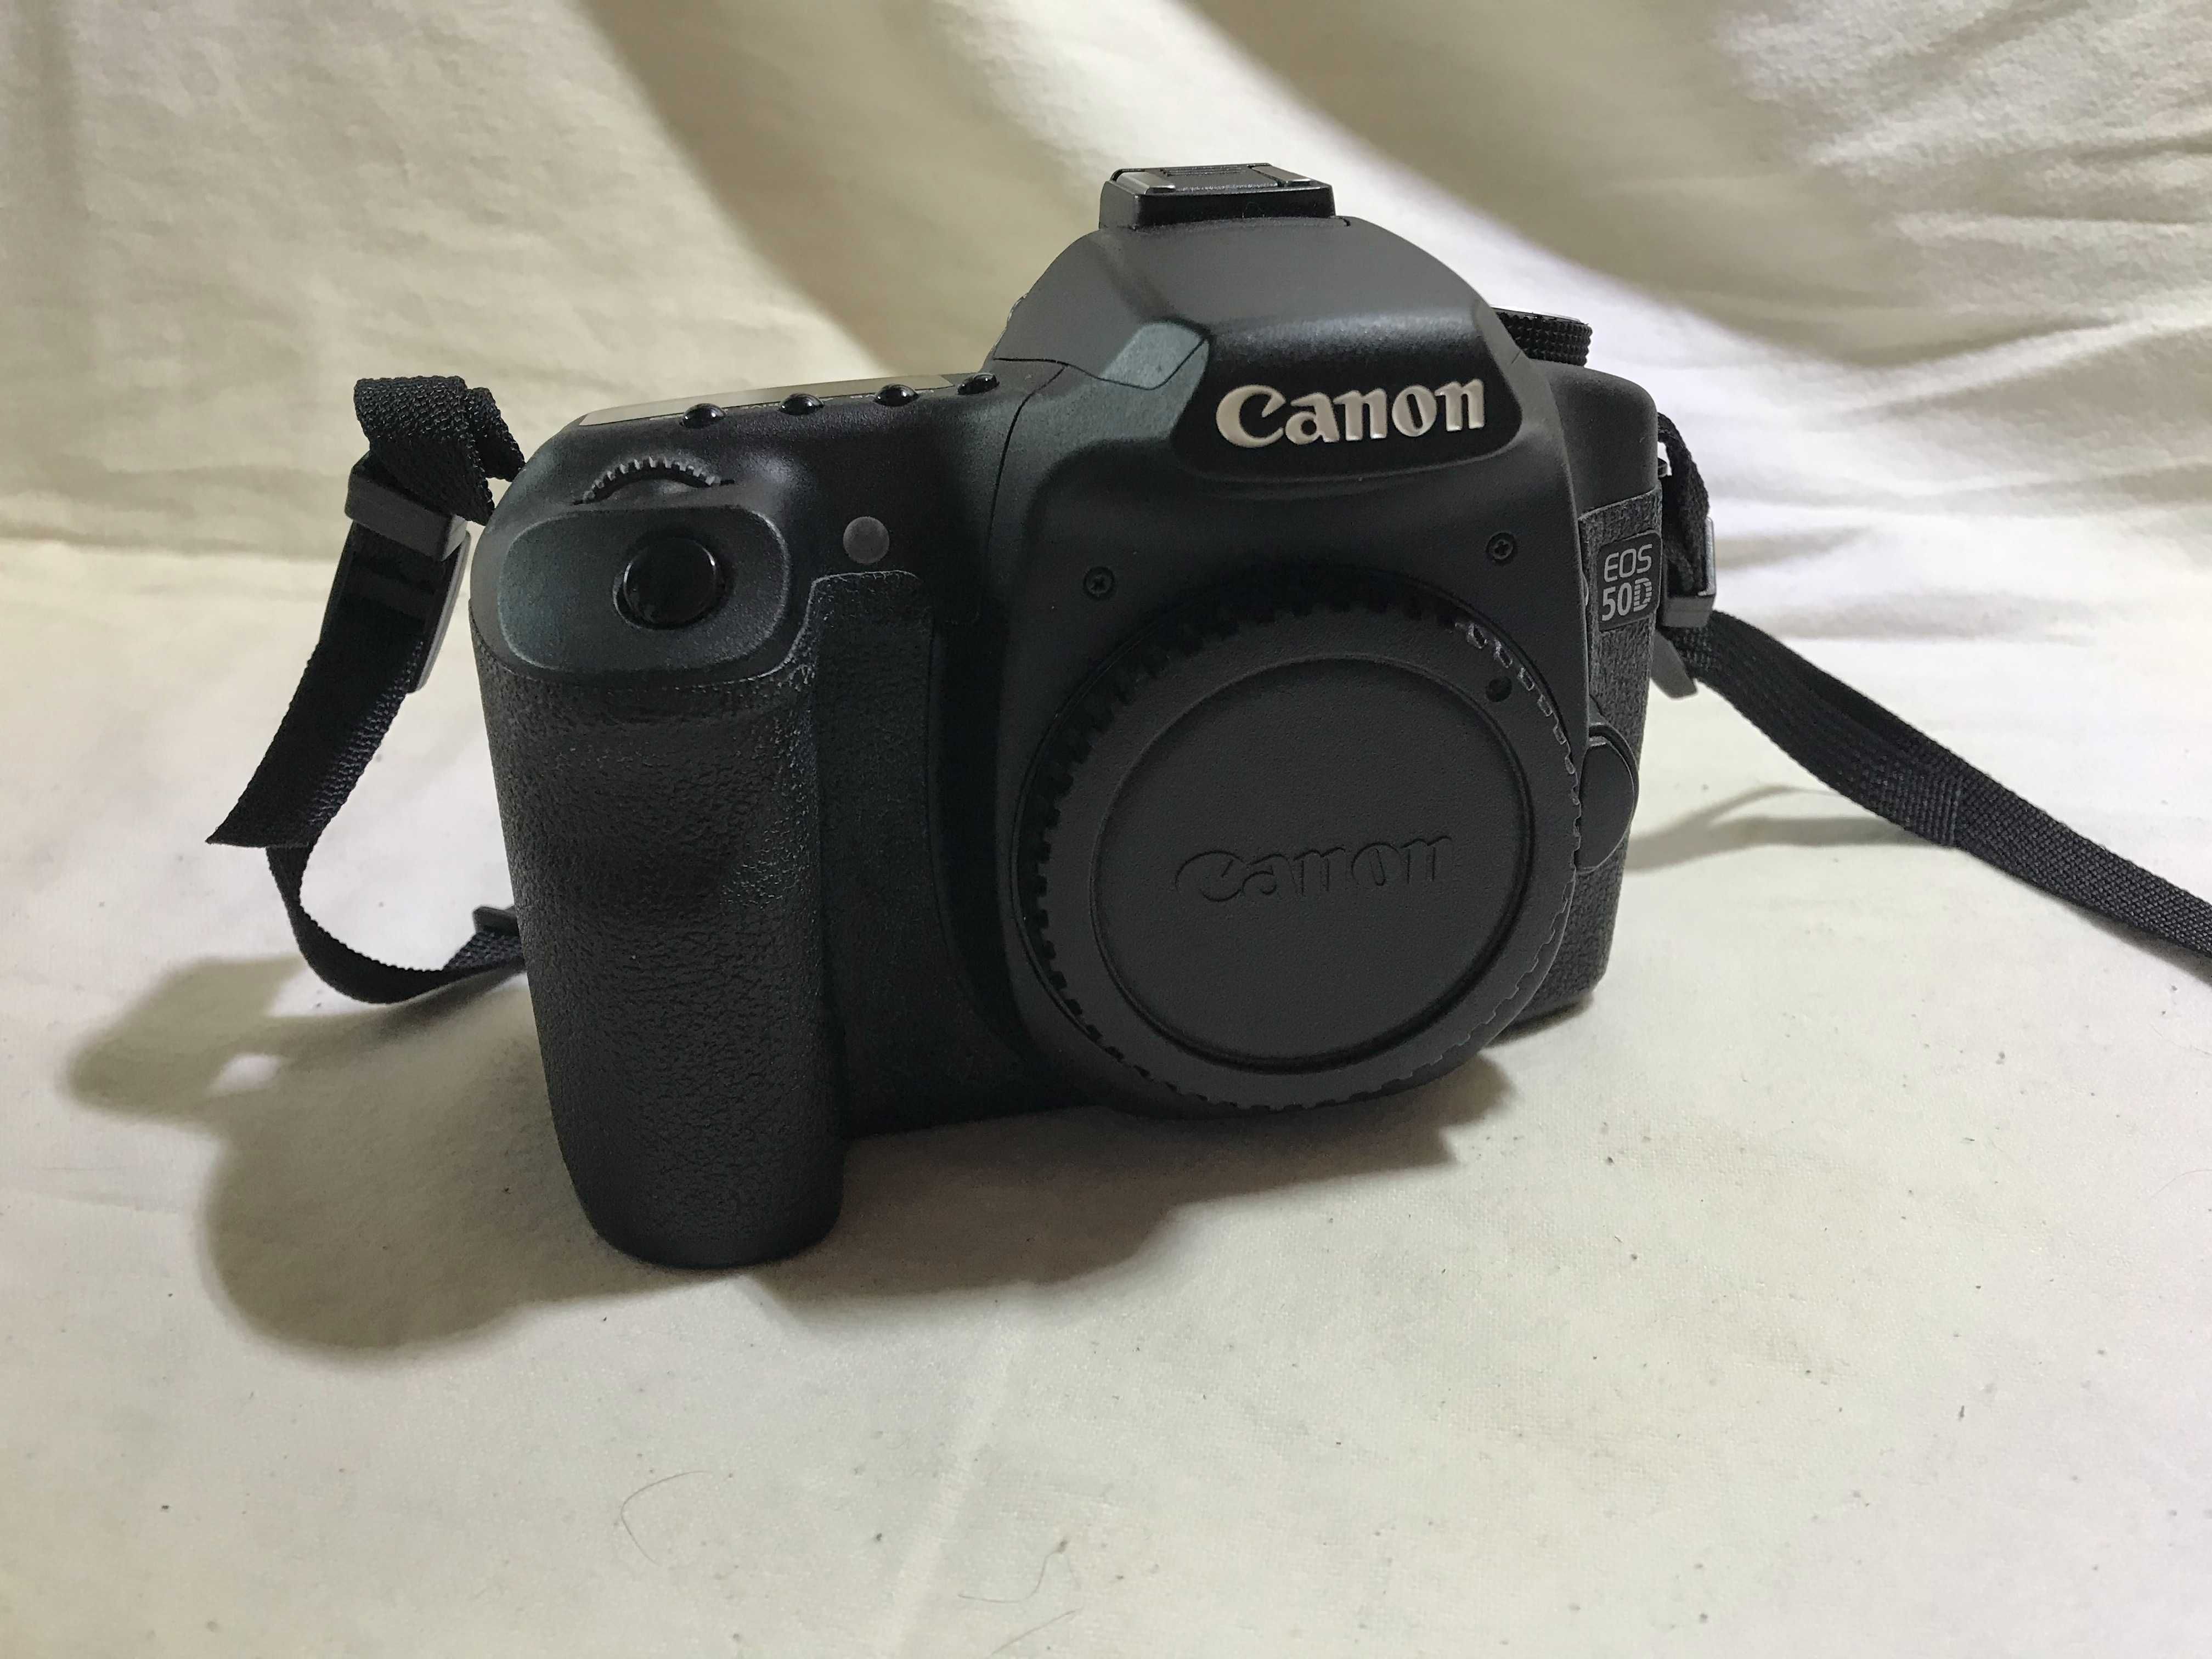 Camaera Fotografica Canon EOS 50D (291)